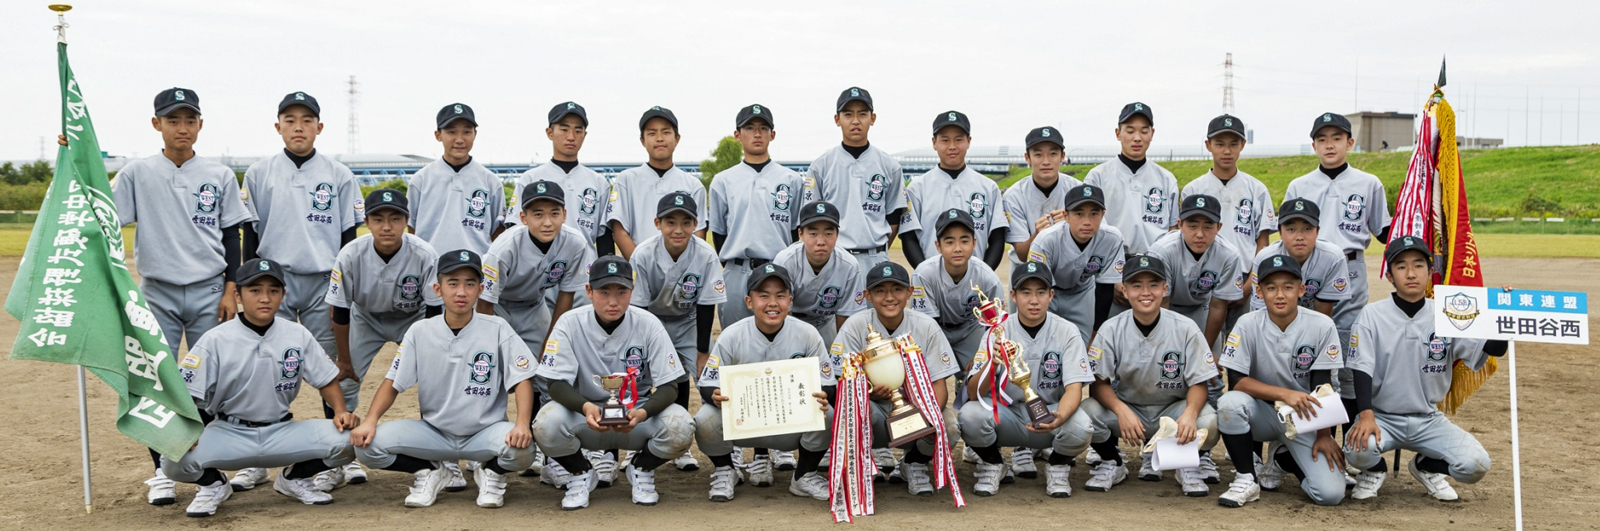 関東 シニア 北 リトル 栃木下野リトルシニア野球協会公式ホームページ